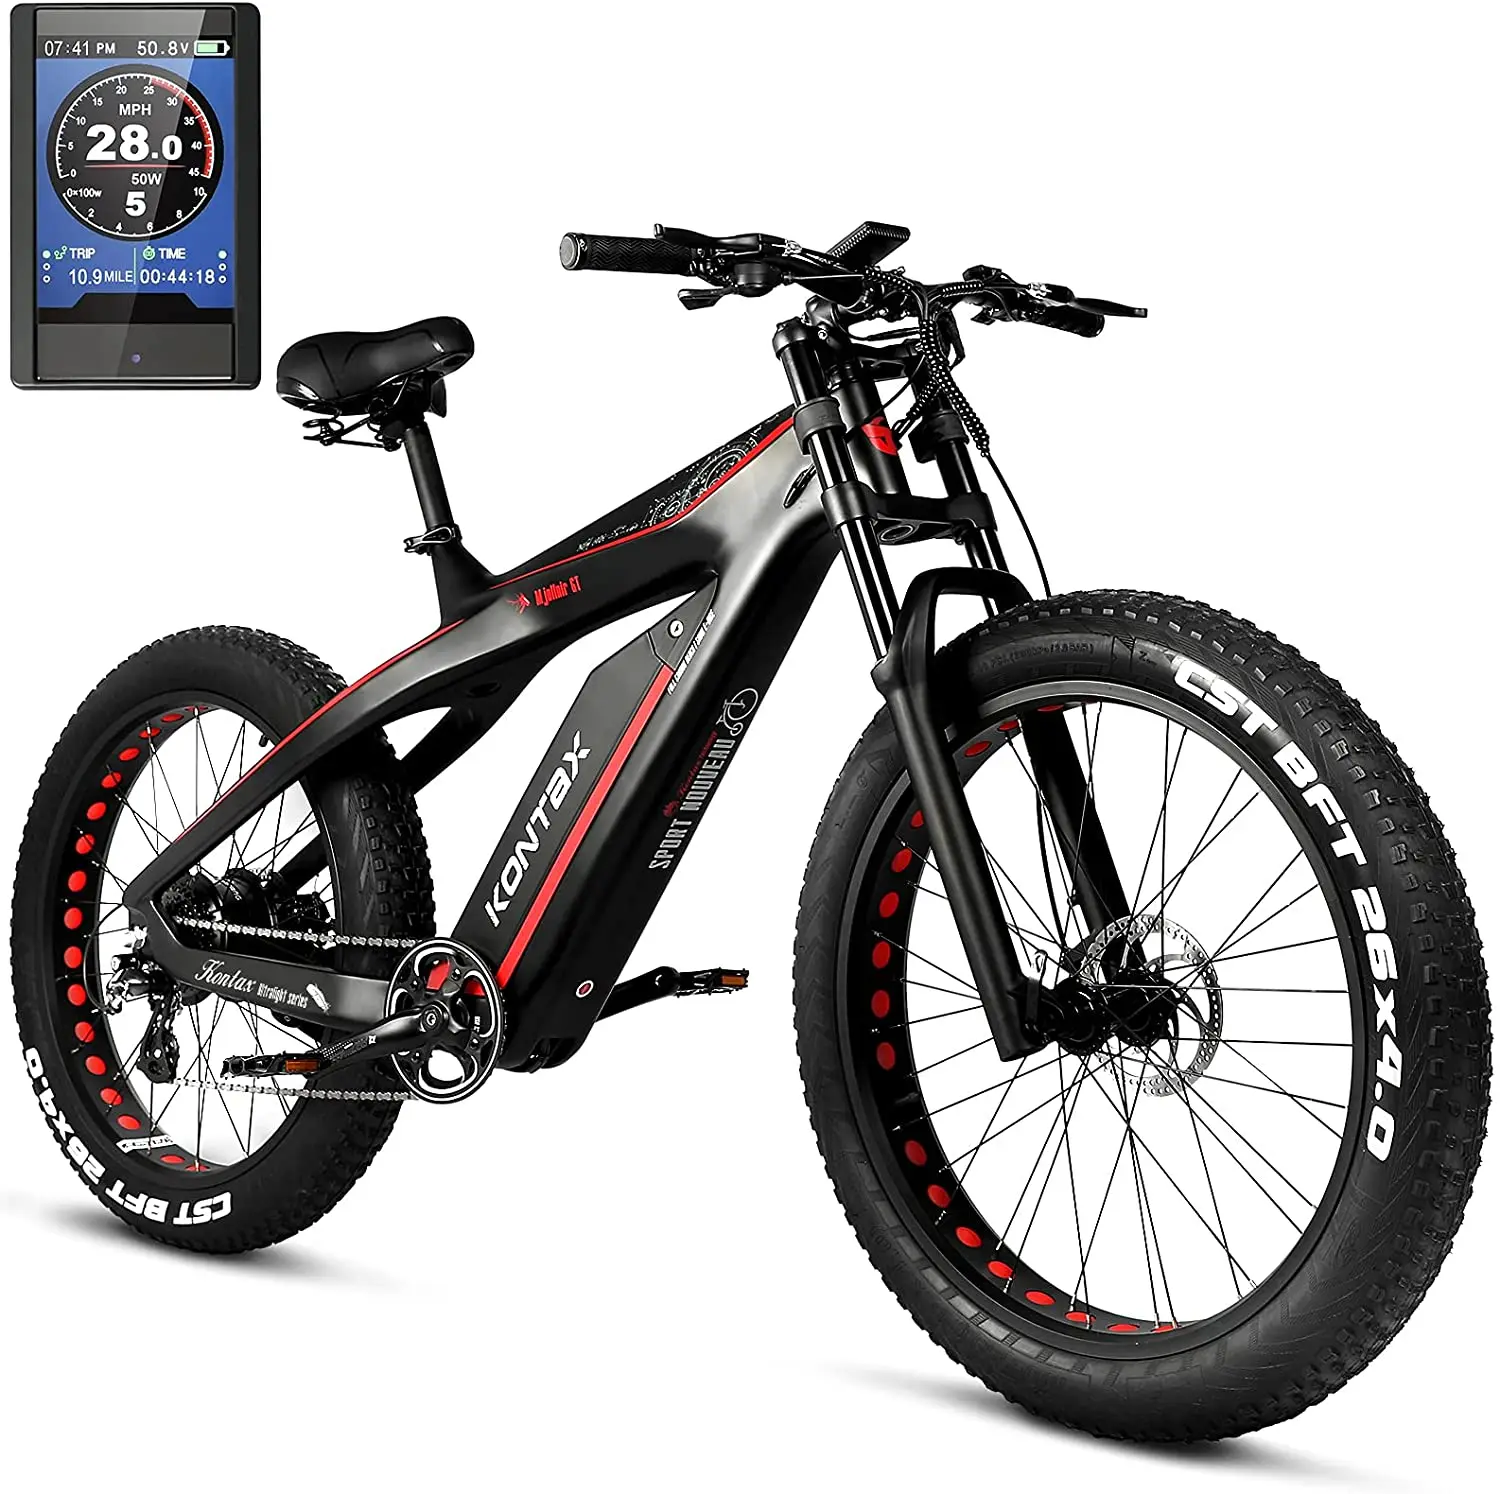 

Kontax Electric Bike Fat Tyre Bicycle Mountain Bike Dirt Jump Bafang Motor 1000W E bike, Customizable